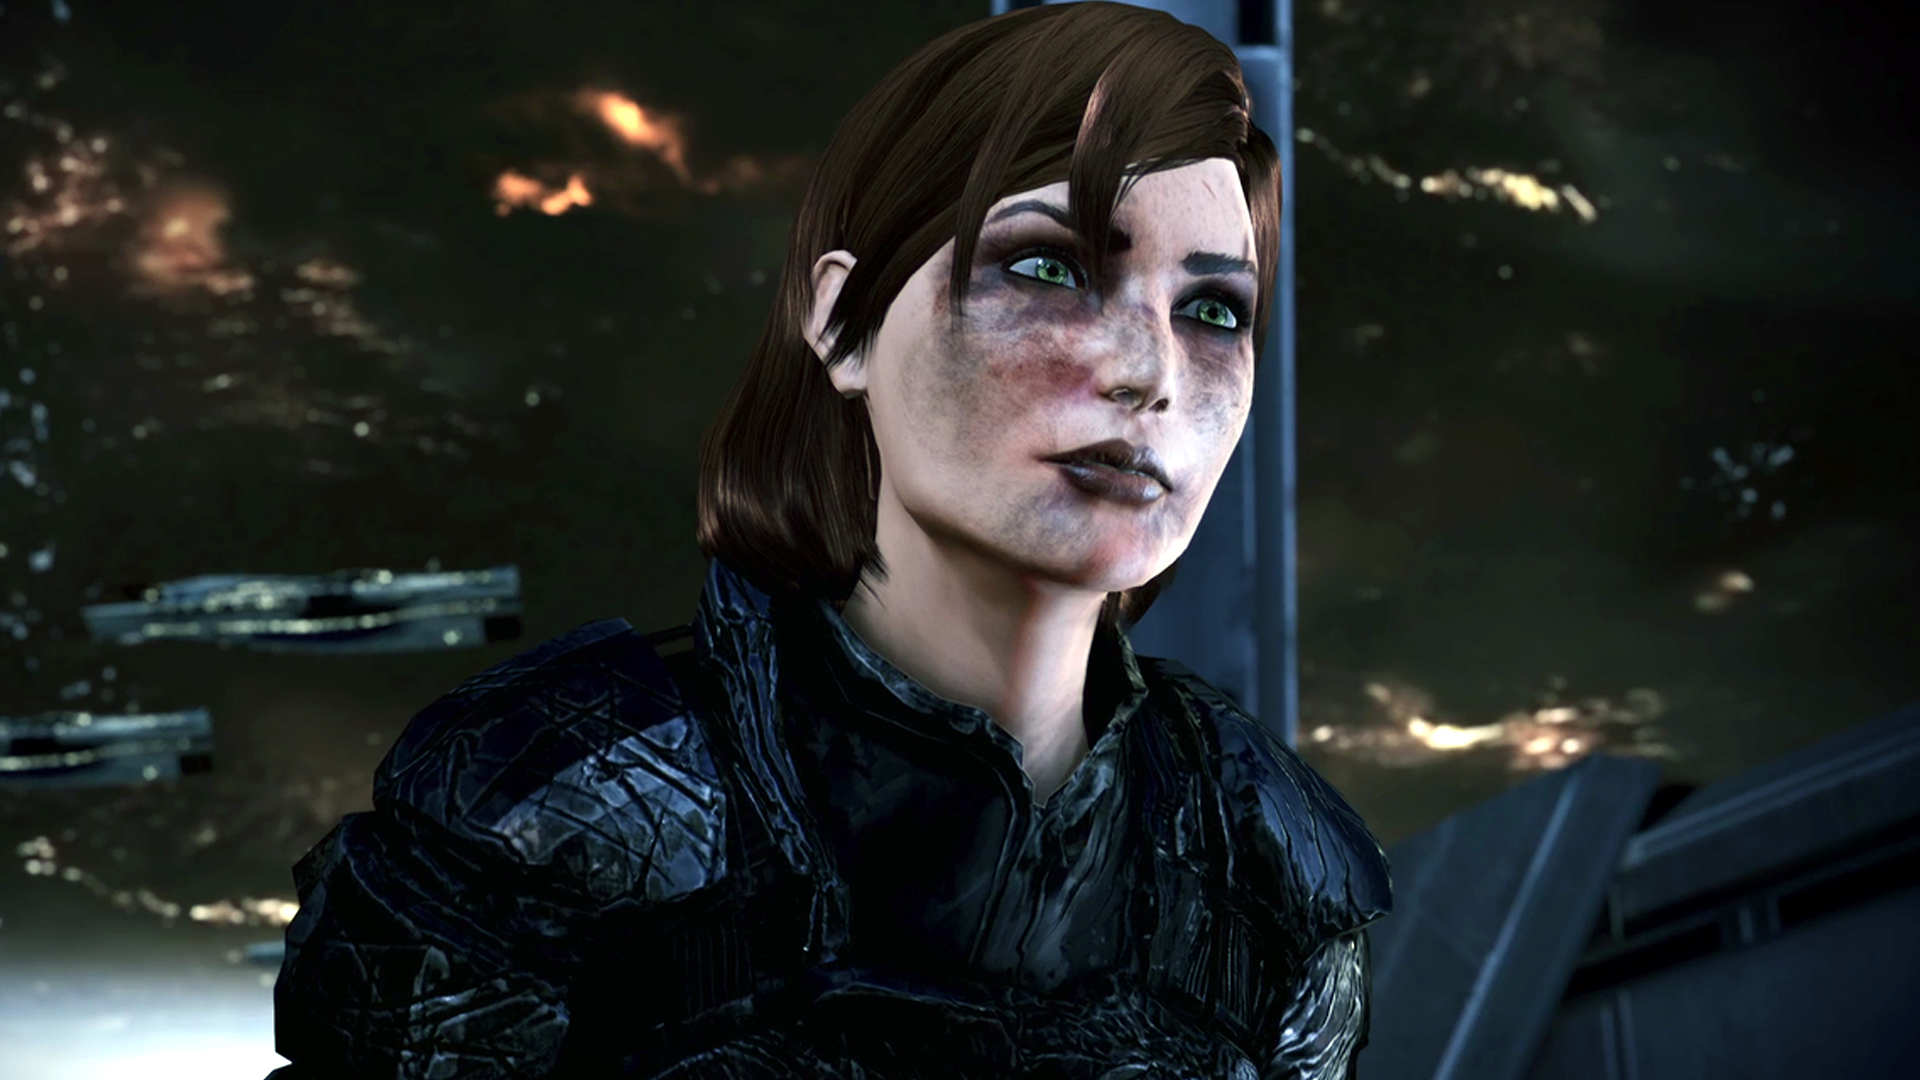 Ny fiafaran'ny Mass Effect 3 tany am-boalohany dia nanana Reaper Queen fa tsy Catalyst